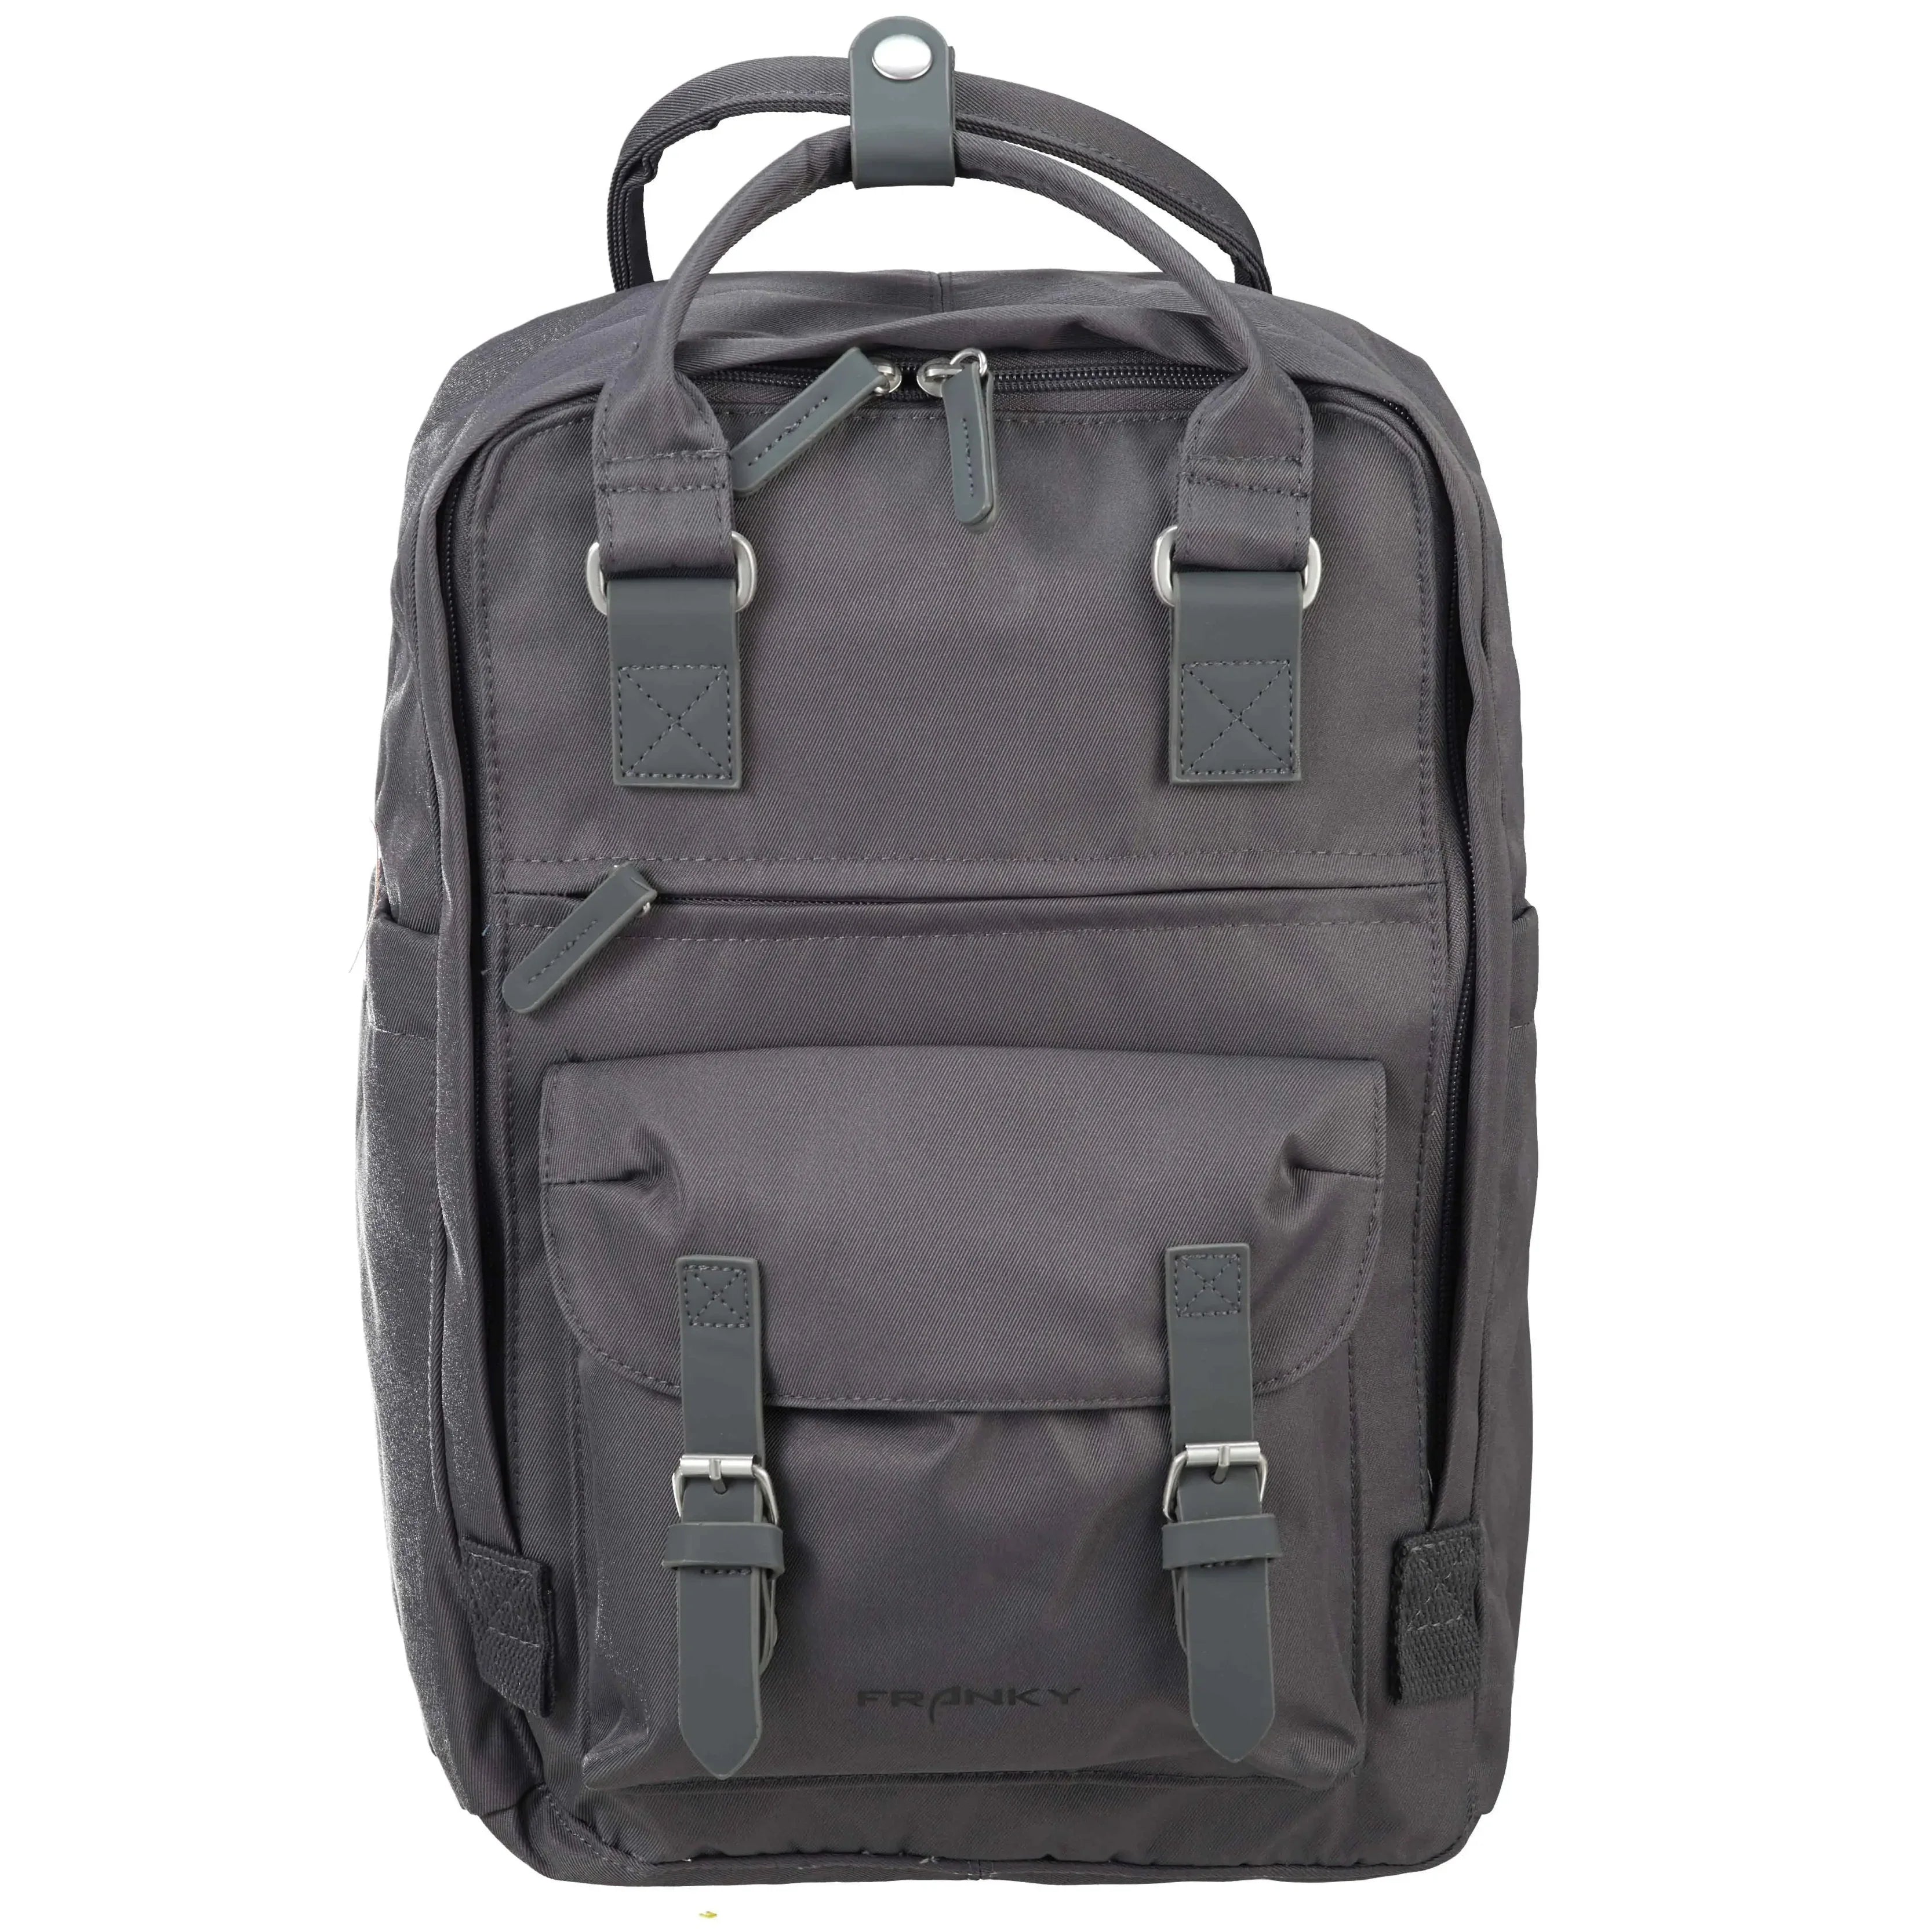 koffer-direkt.de Leisure backpack 39 cm - anthracite